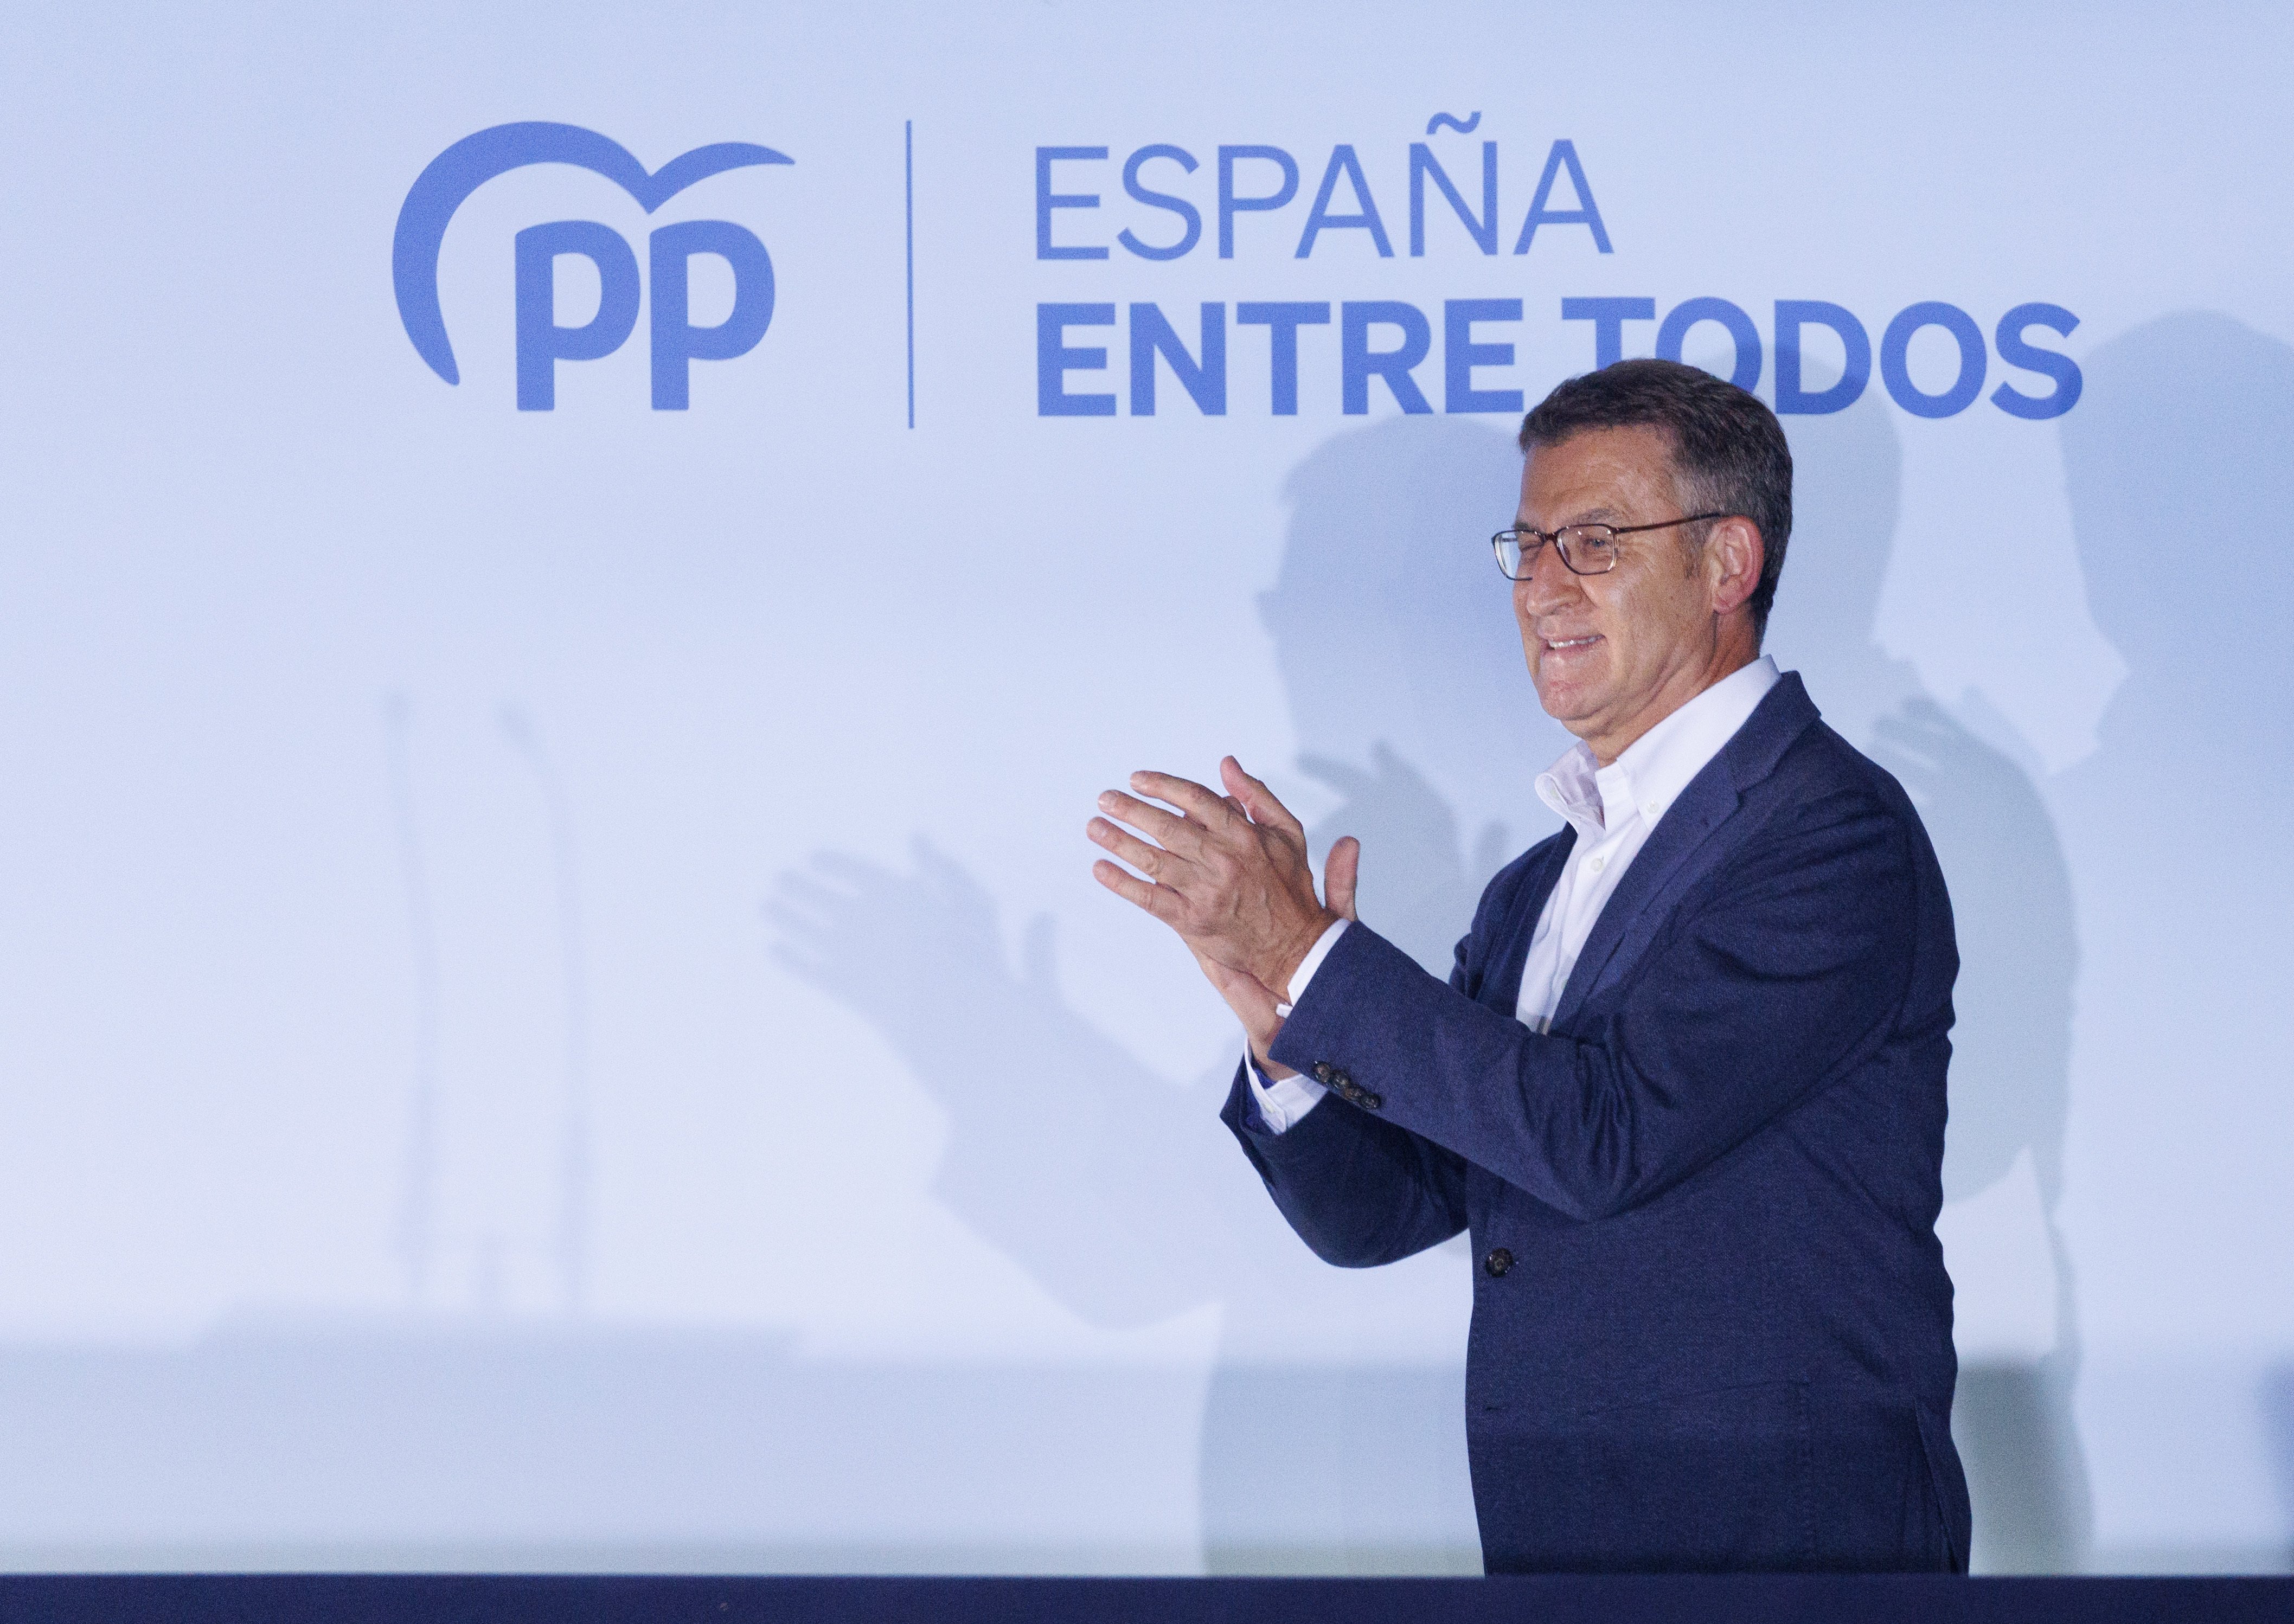 Feijóo saca pecho del triunfo en las elecciones: "España ha iniciado un nuevo ciclo político"